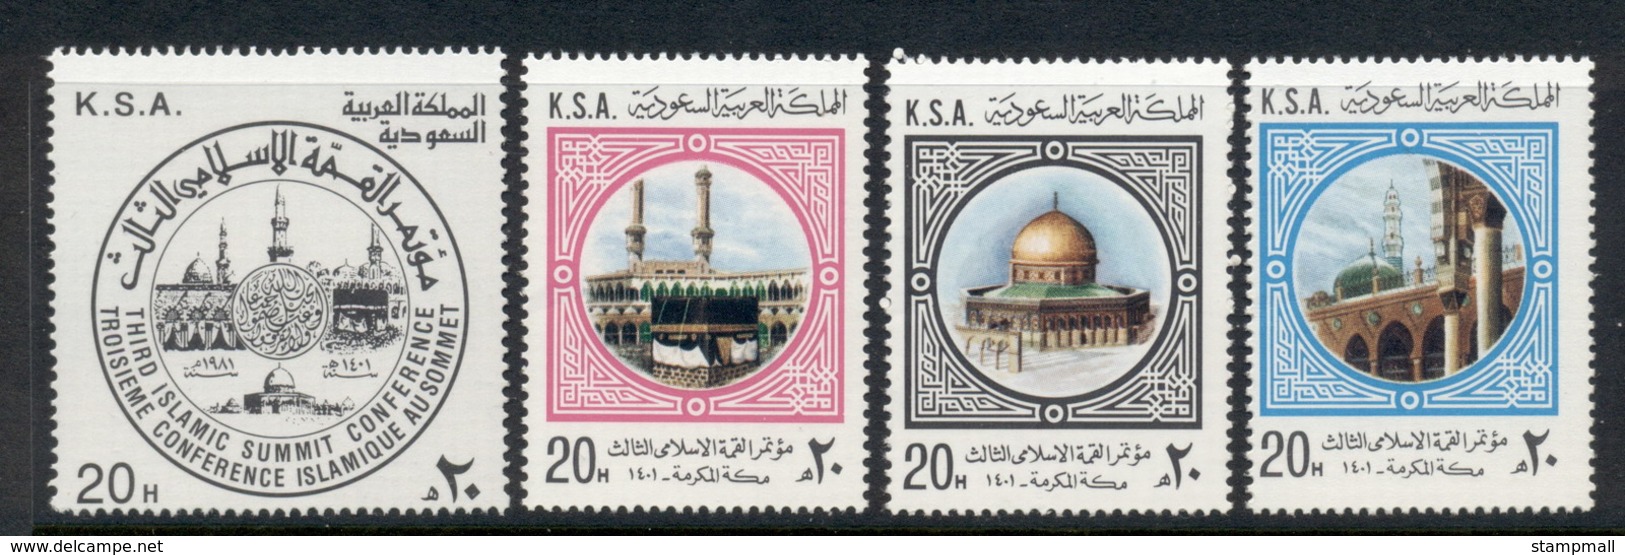 Saudi Arabia 1981 Islamic Summit Conference MUH - Saudi Arabia